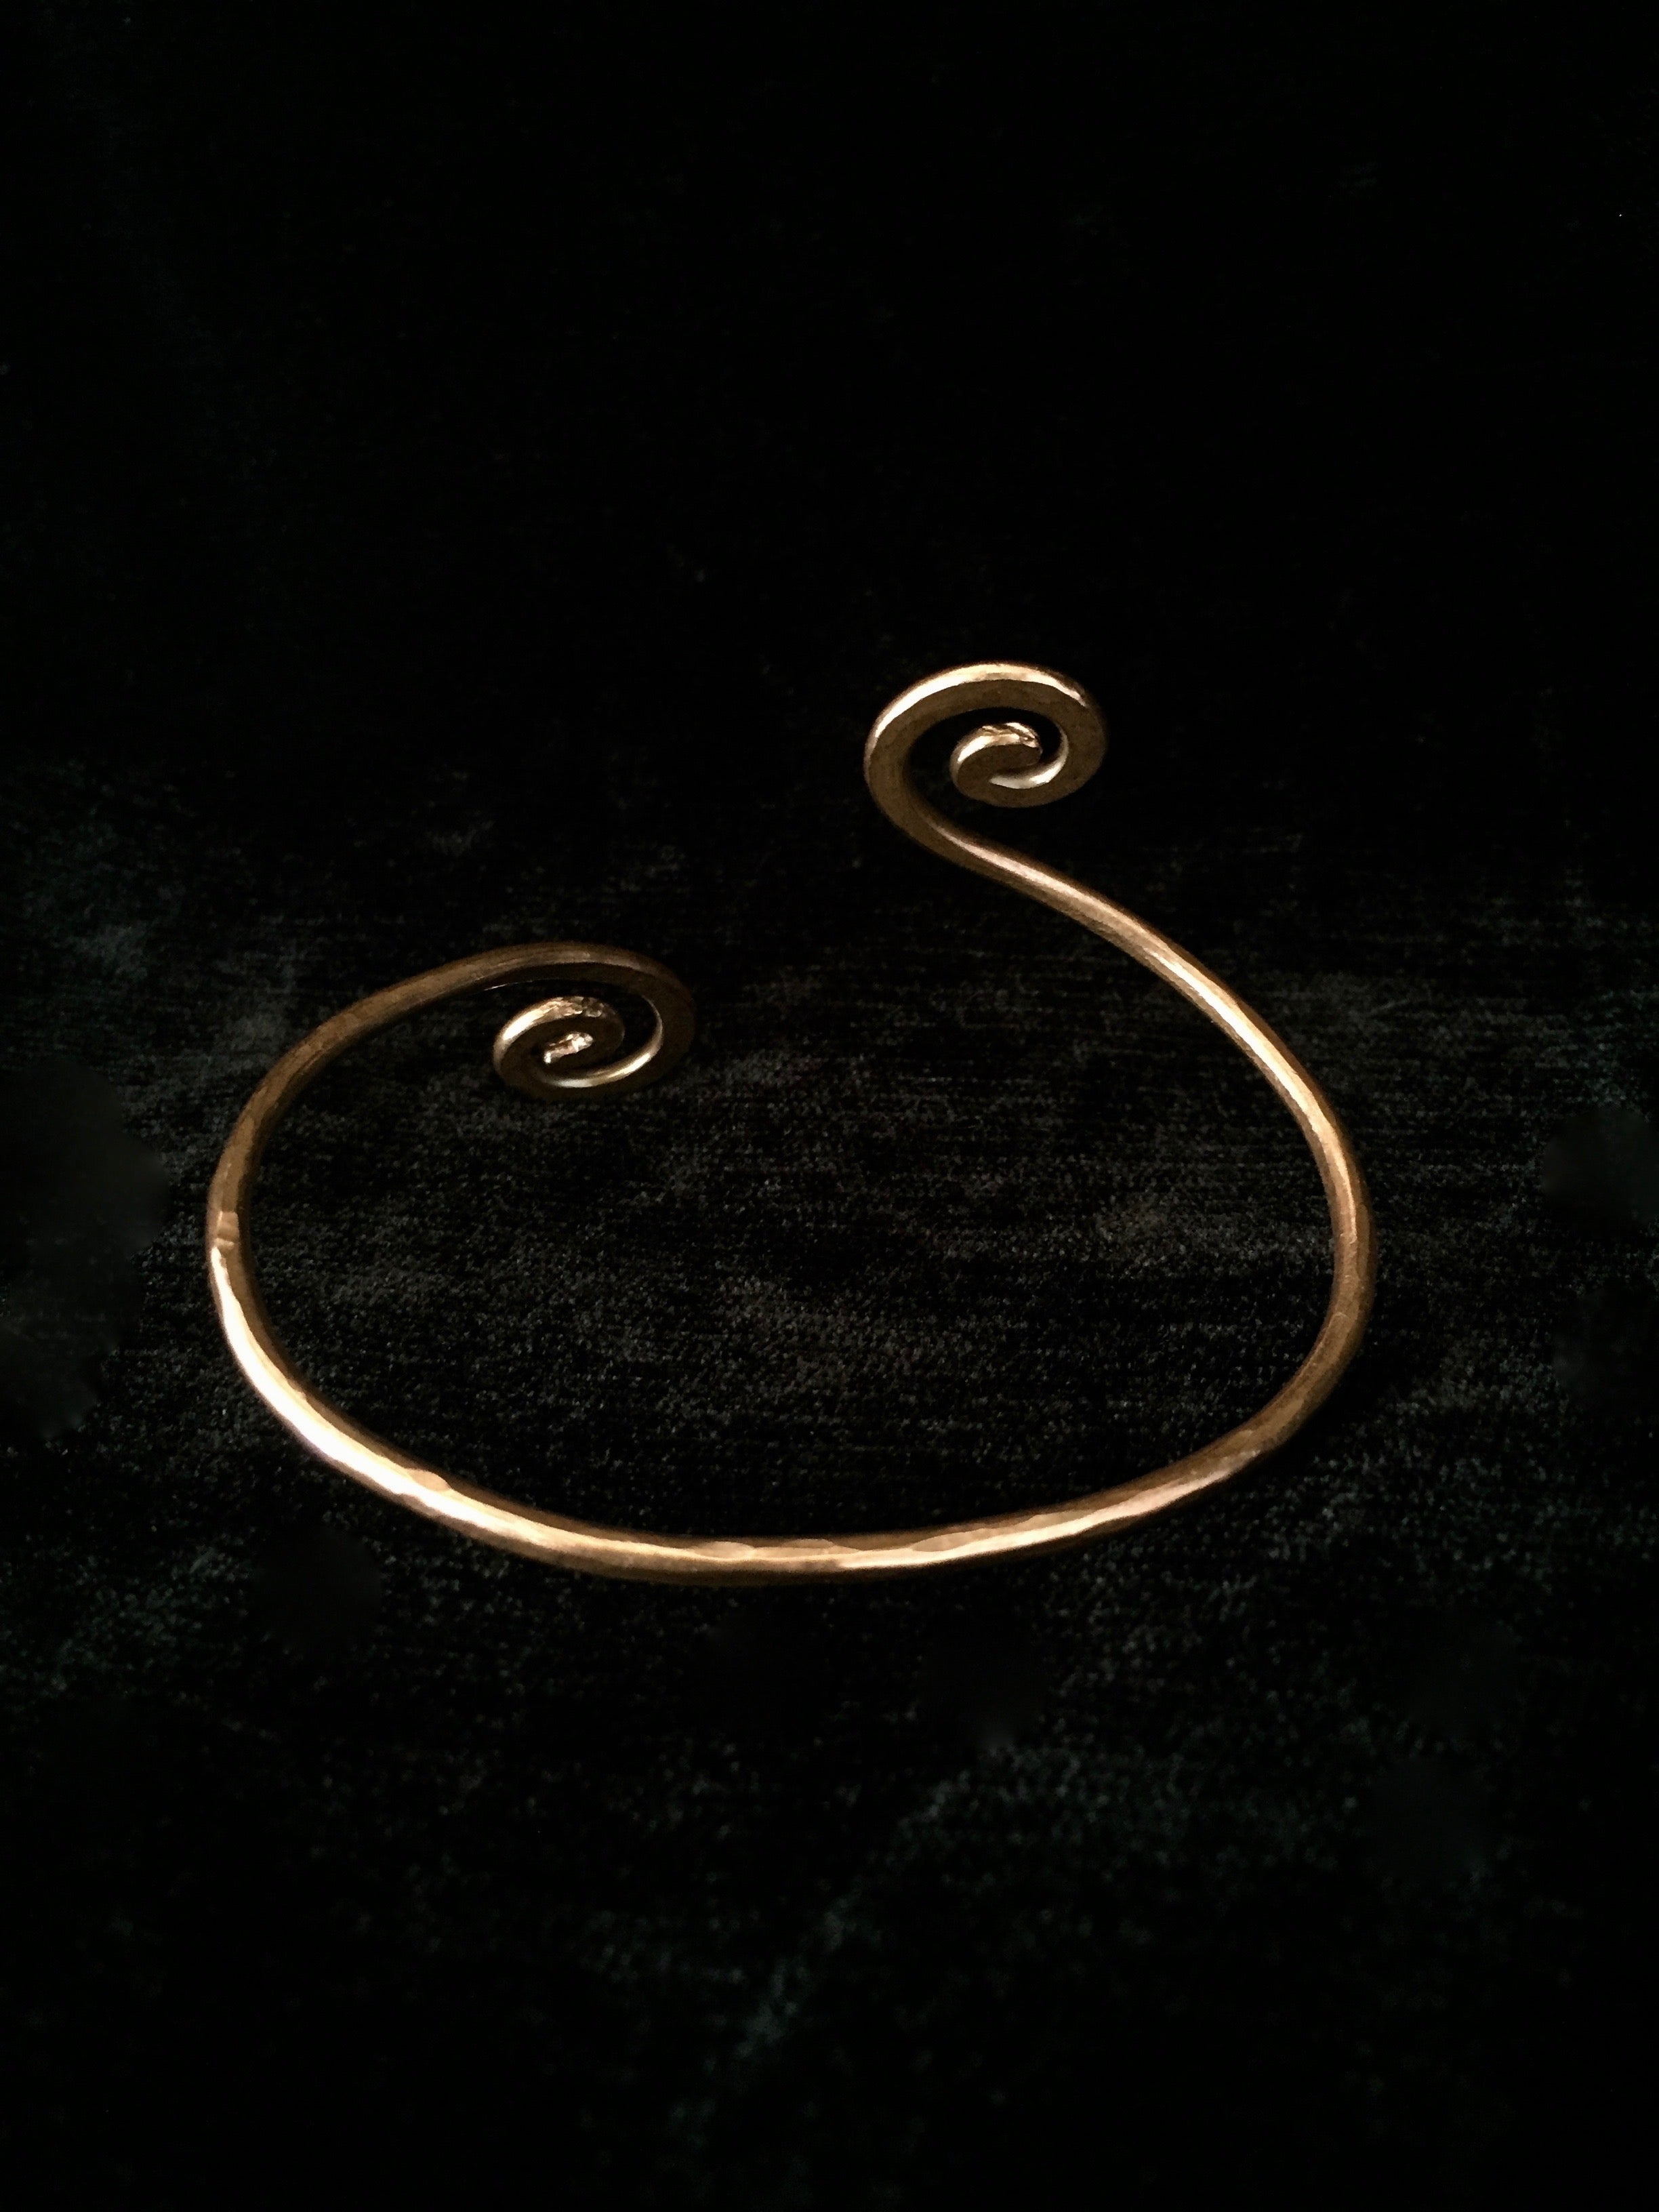 Copper Spiral Bracelet